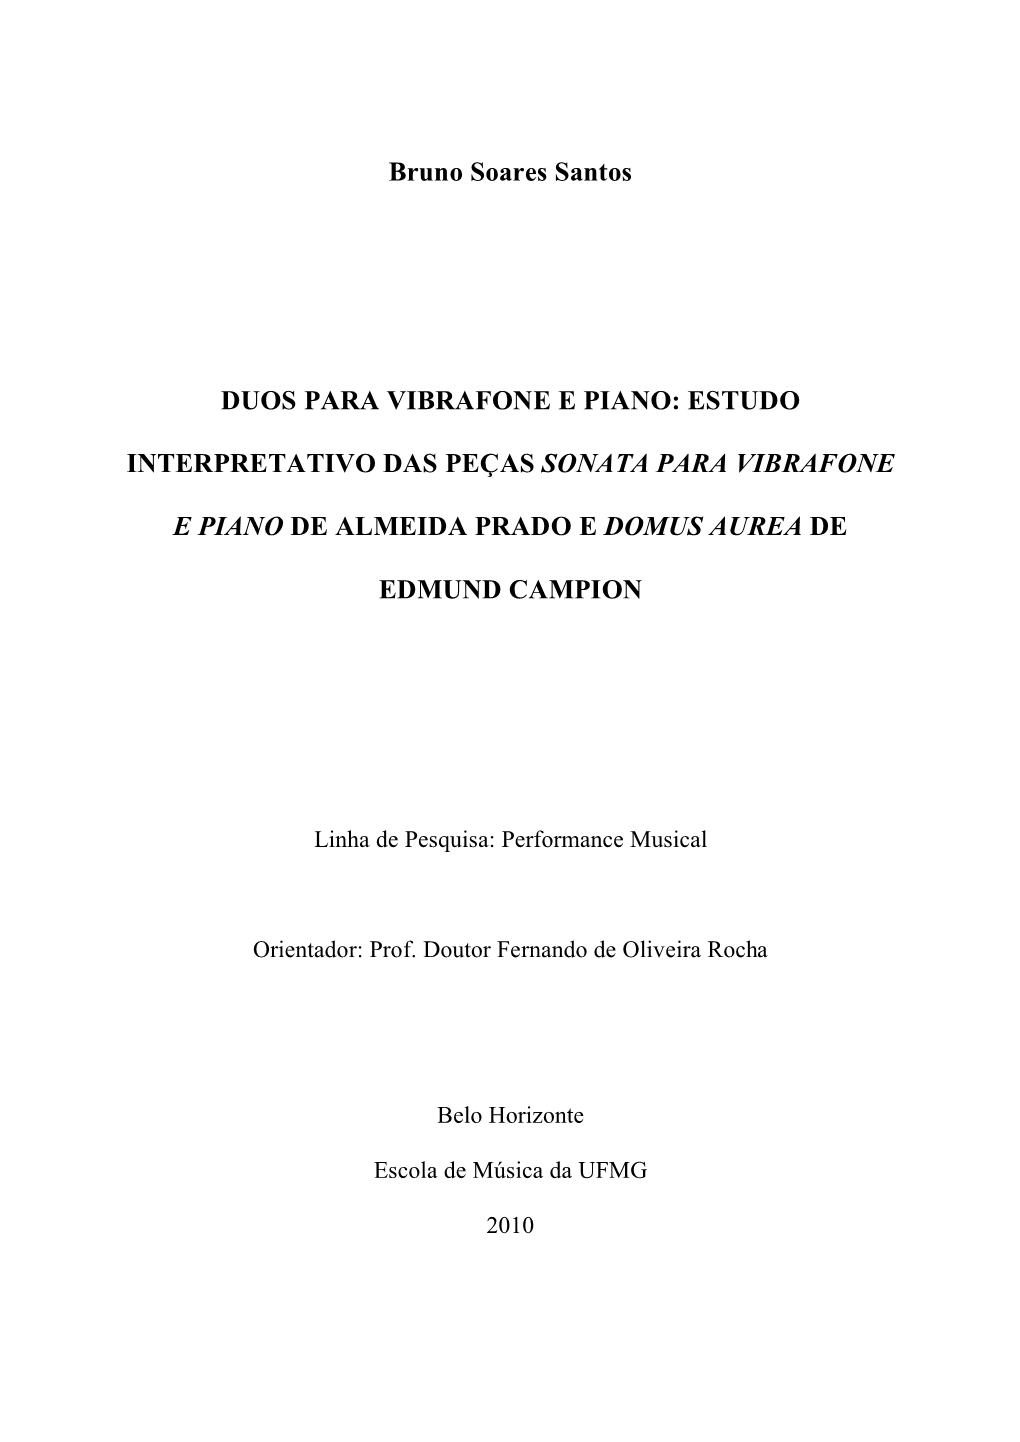 Estudo Interpretativo Das Peças Sonata Para Vibrafone De Almeida Prado E Domus Aurea De Edmundo Campion / Bruno Soares Santos